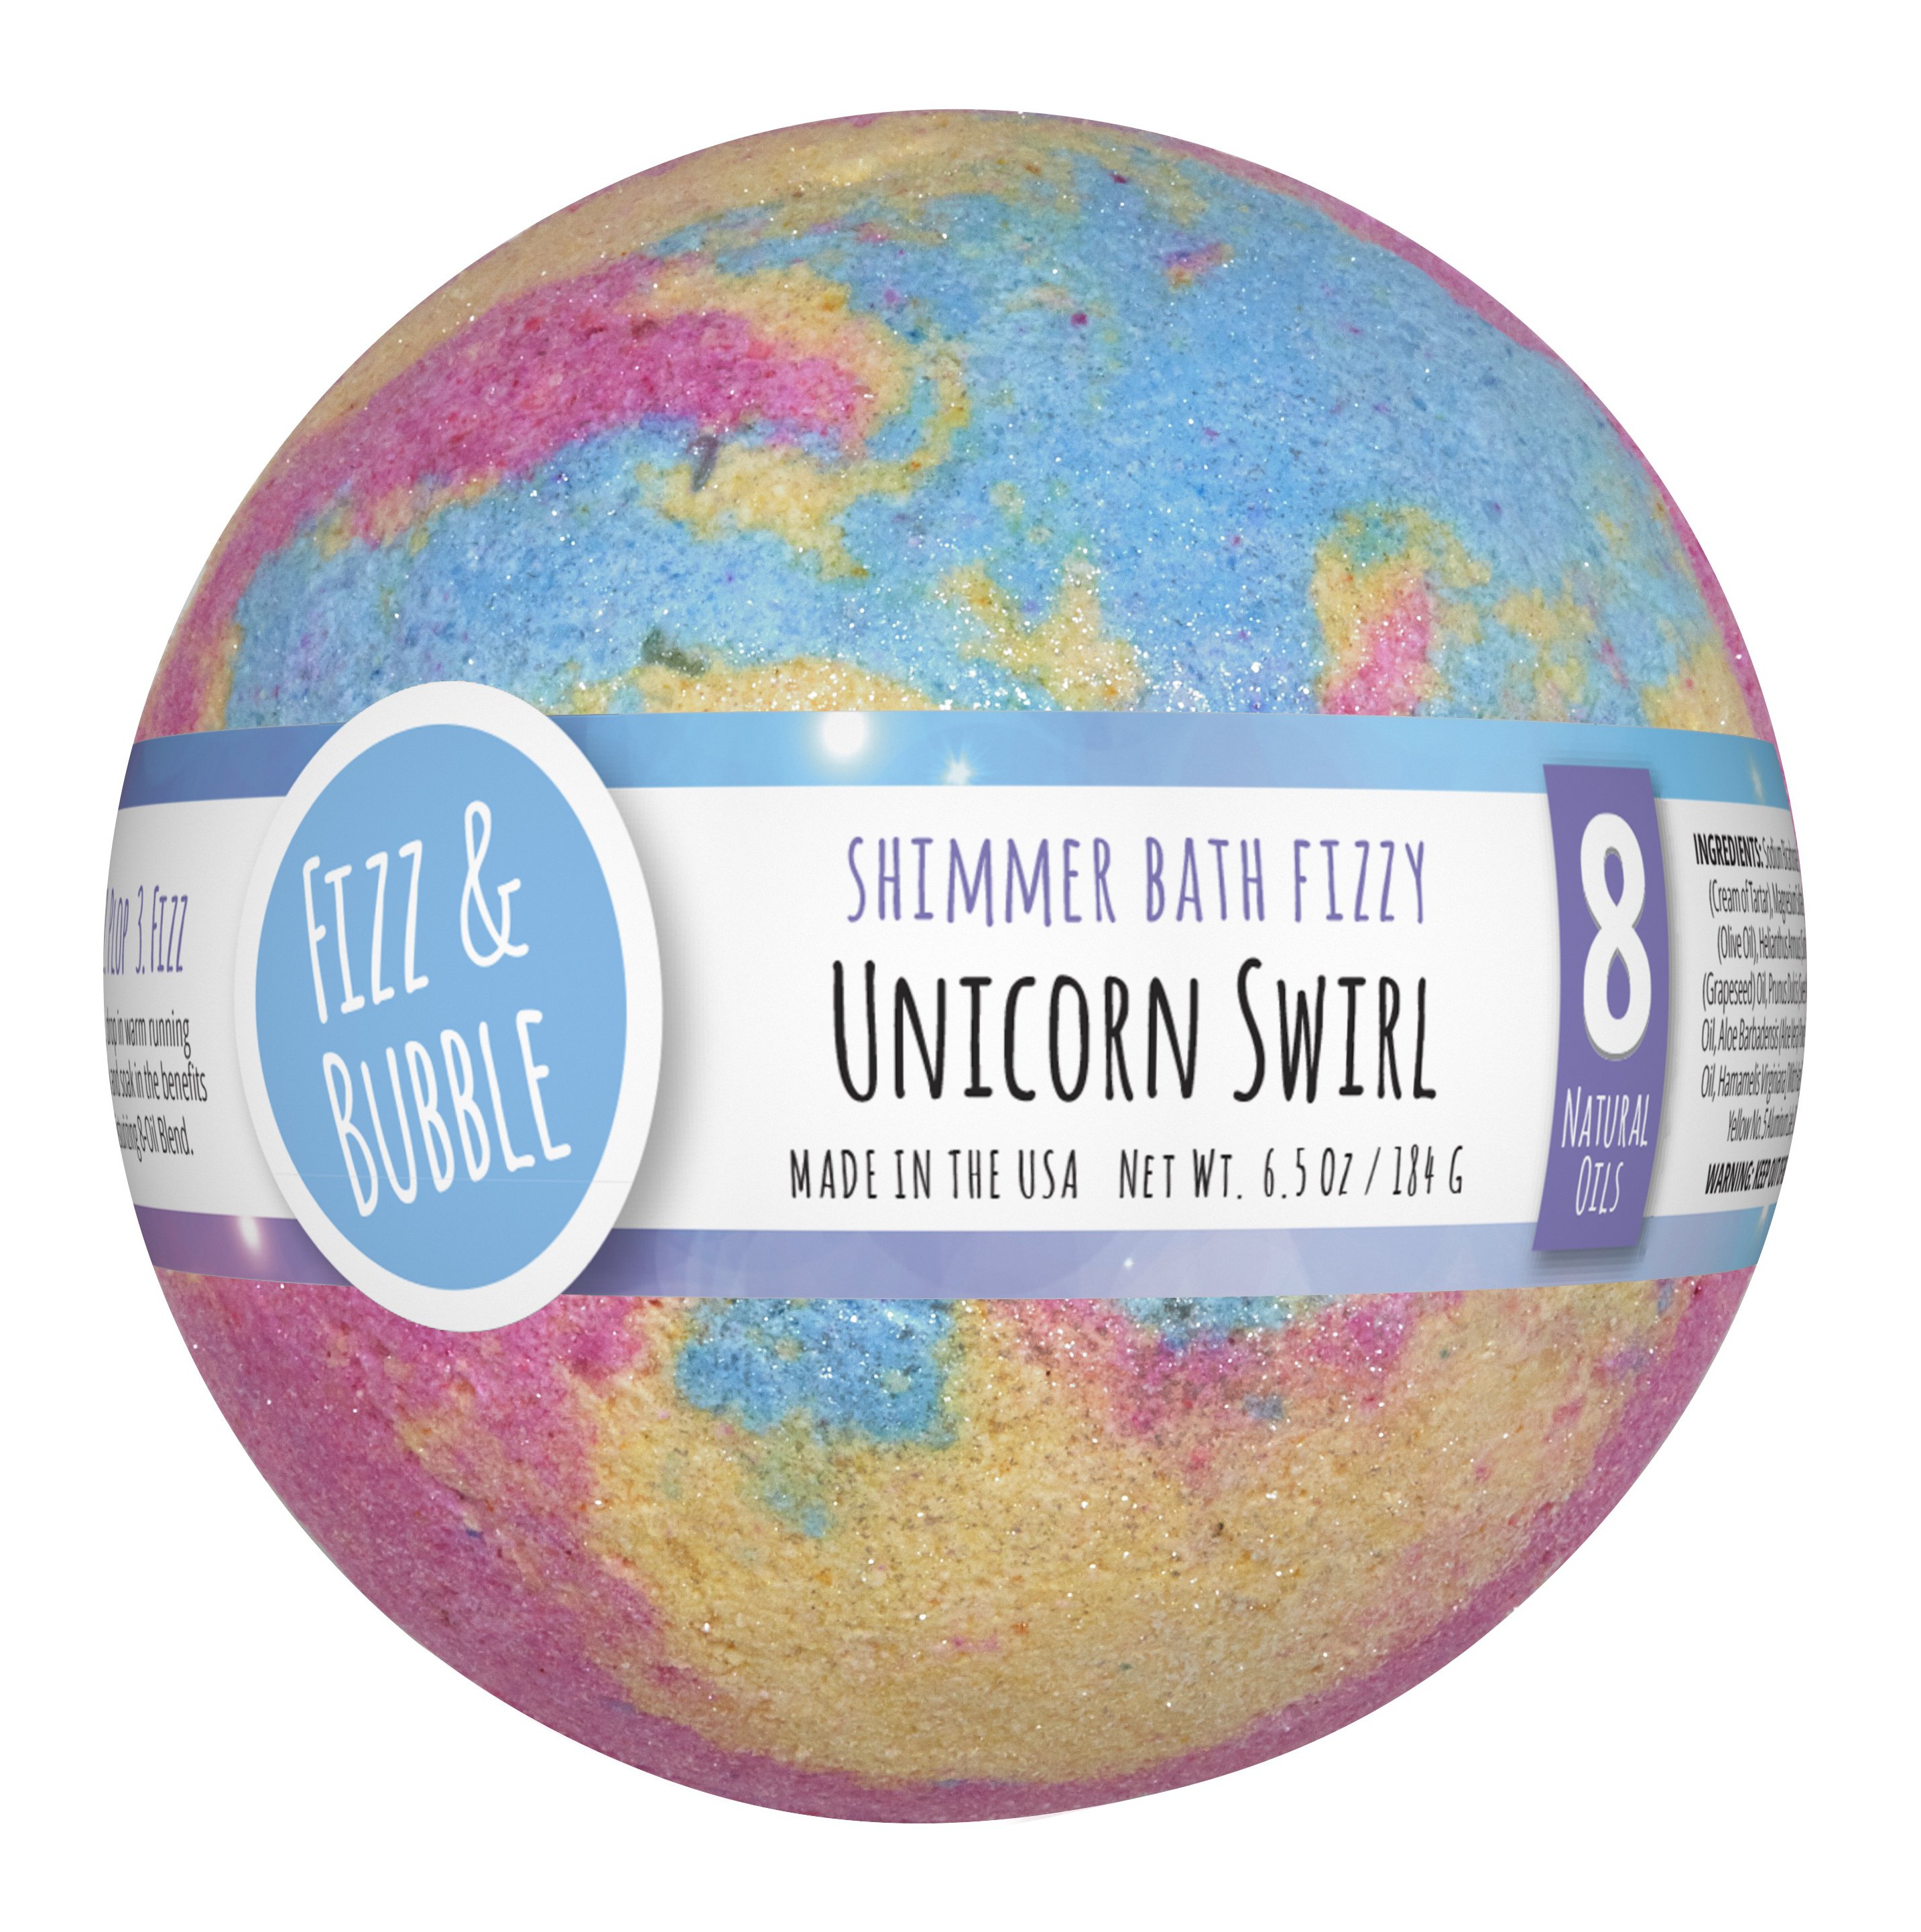 Fizz & Bubble Unicorn Swirl Shimmer Large Bath Fizzy